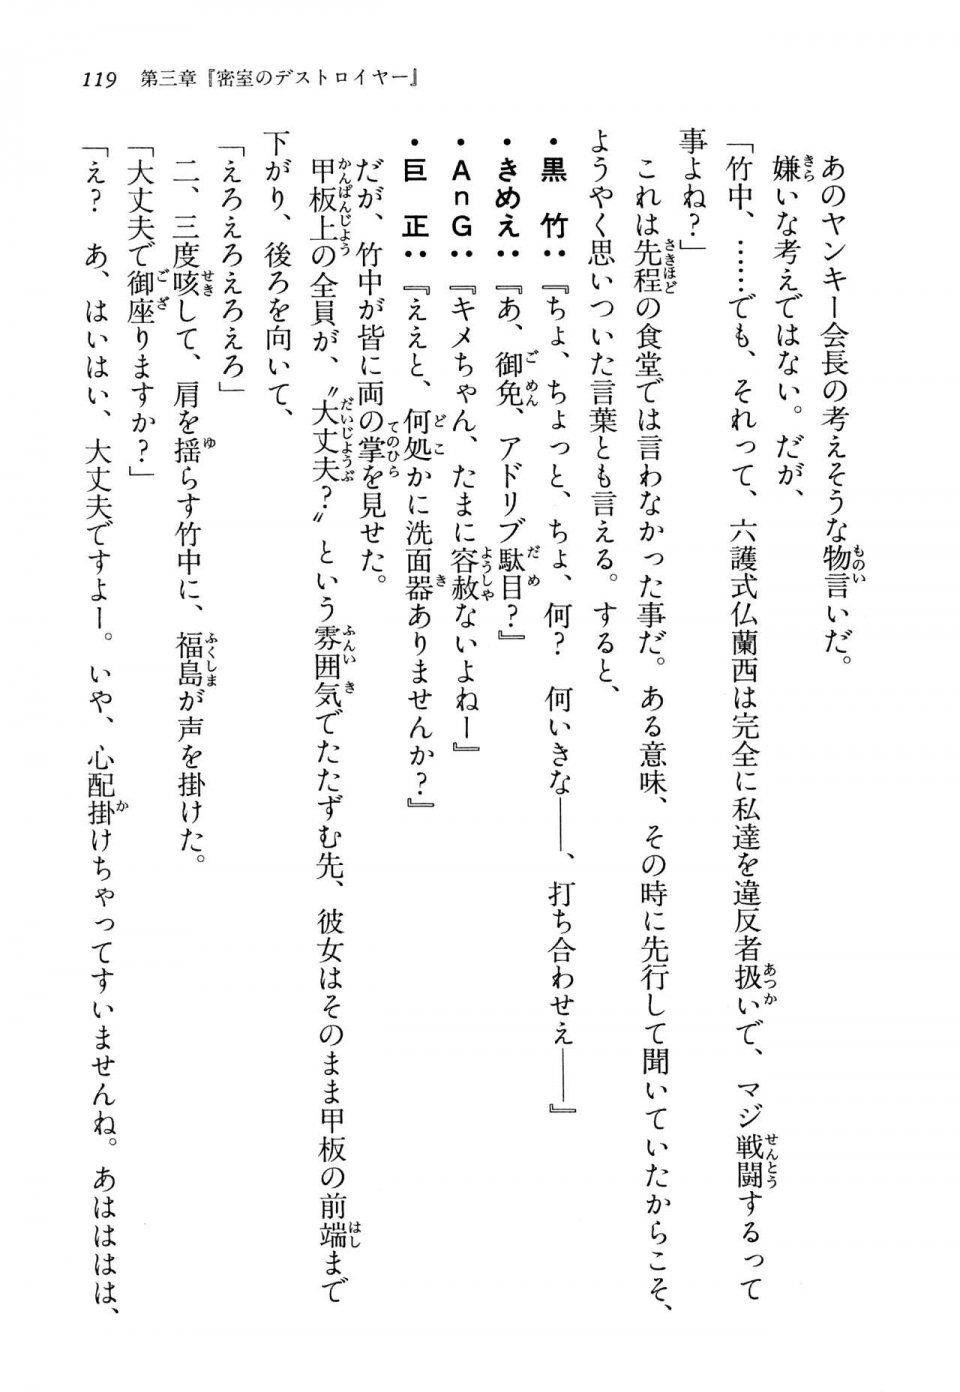 Kyoukai Senjou no Horizon LN Vol 13(6A) - Photo #119